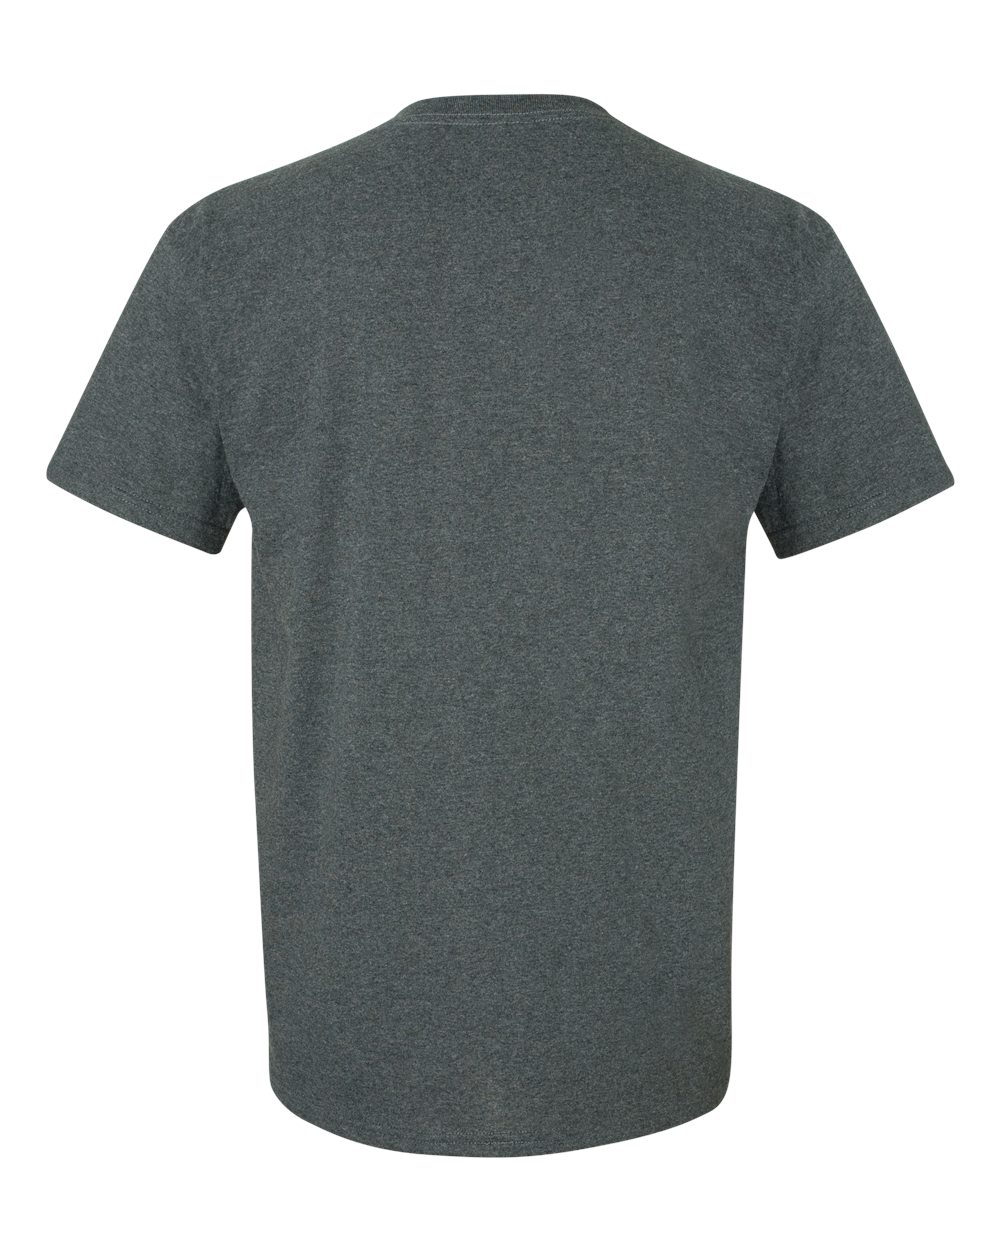 Gildan Mens Ultra Cotton and Blend Blank Short Sleeve T Shirt 2000a ...